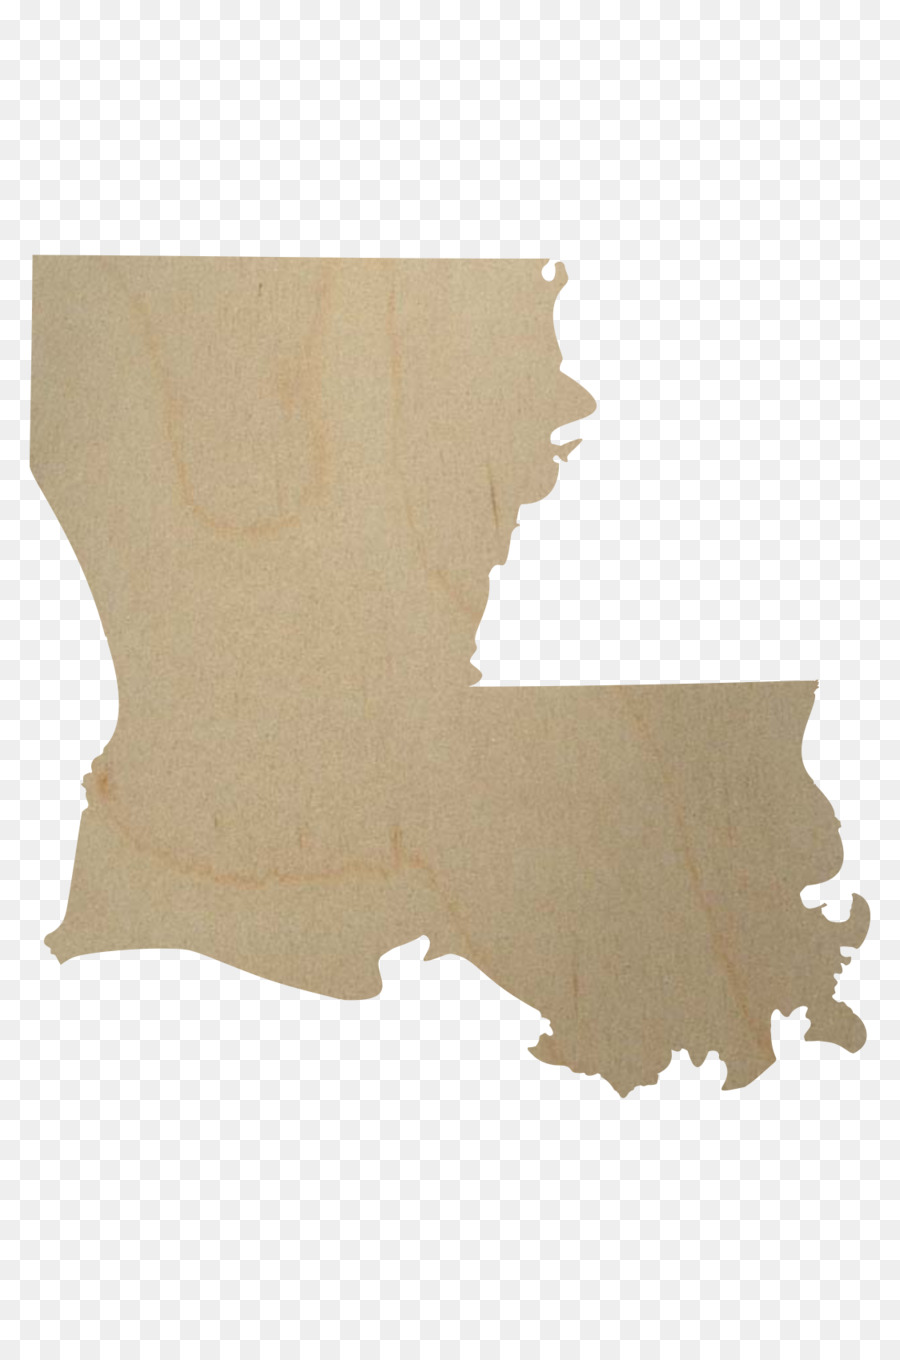 Acquisto Della Louisiana Del Sud, Stati Uniti, New Orleans La Mappa - mappa